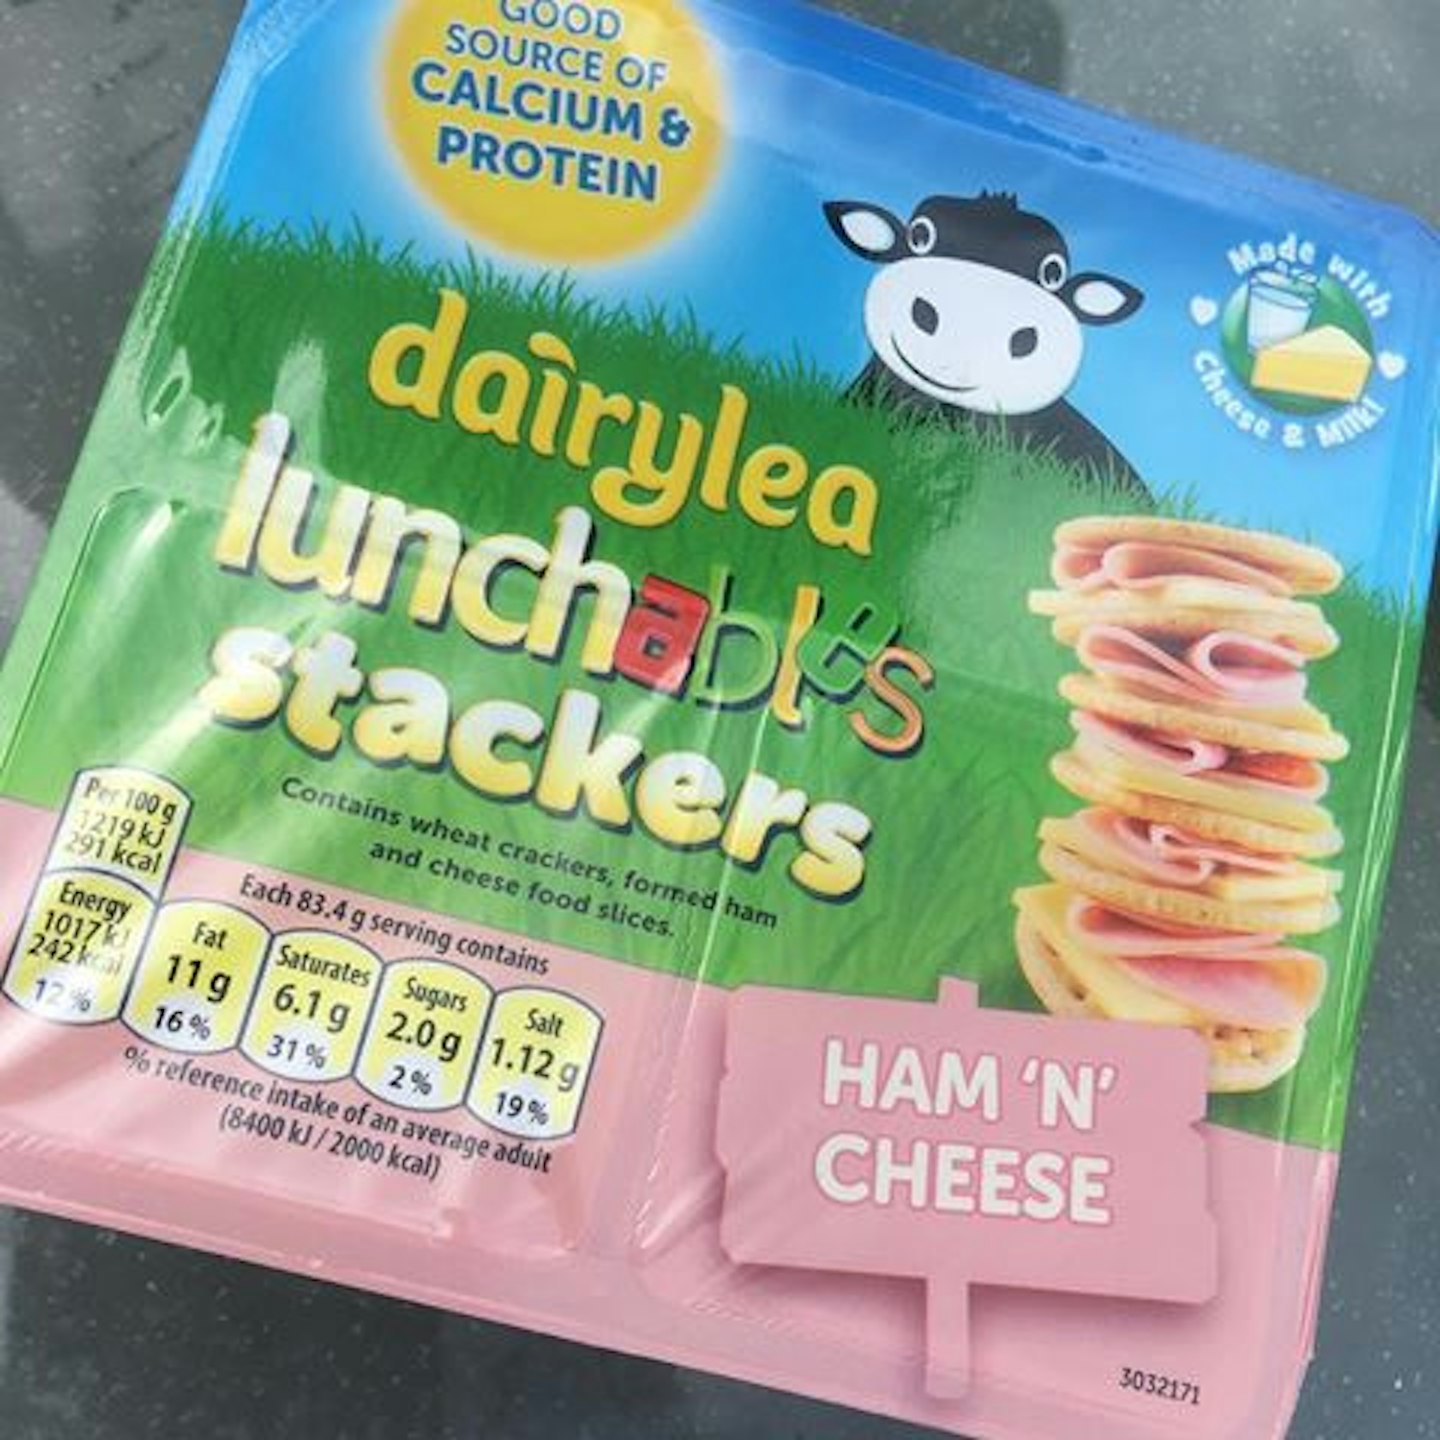 Dairylea Lunchable